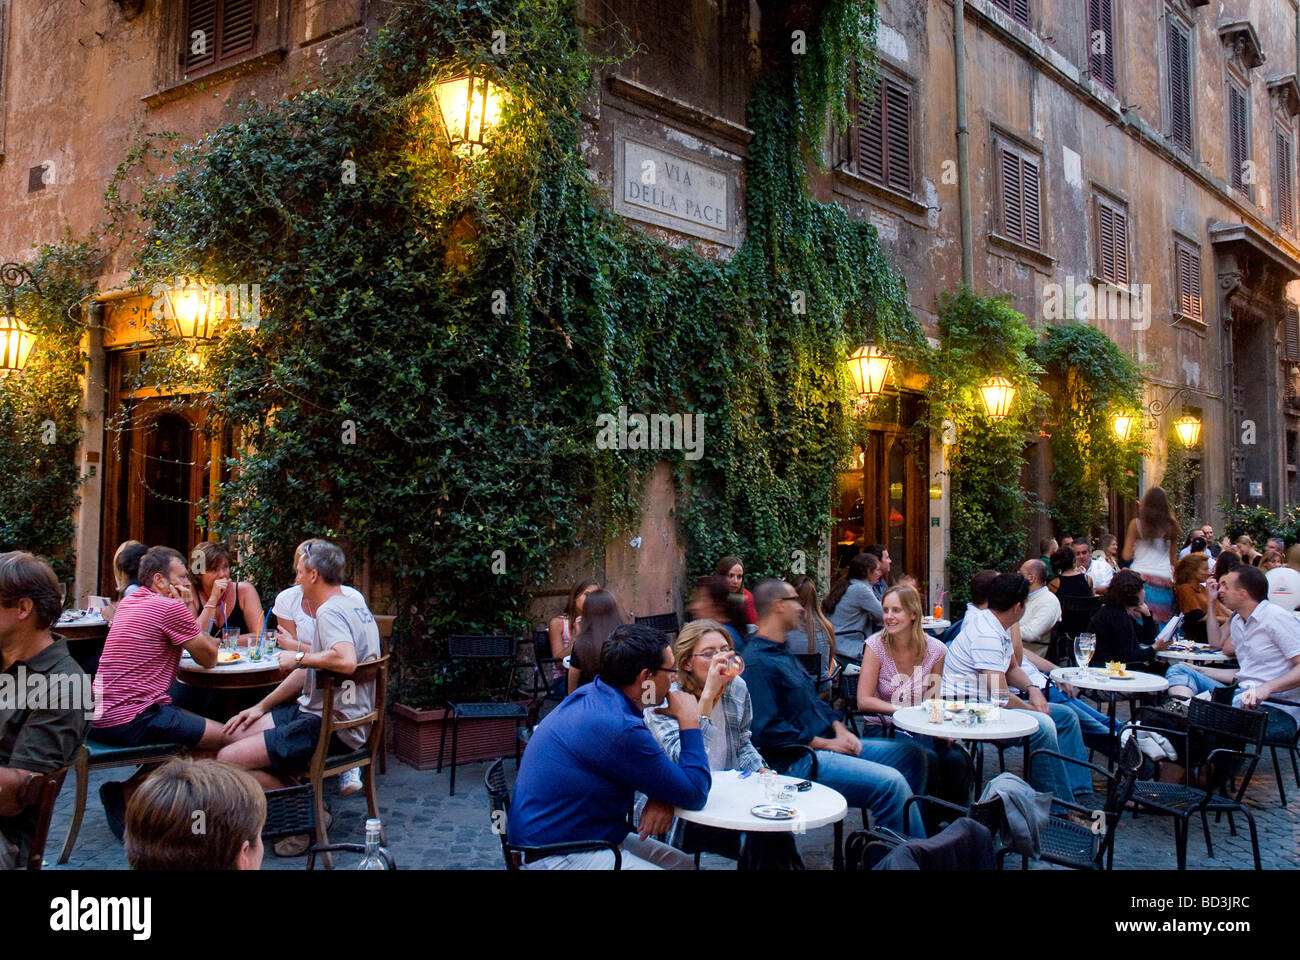 Des repas en plein air dans une rue pavée calme, Pierre Cafe della Pace, Rome, Italie Banque D'Images